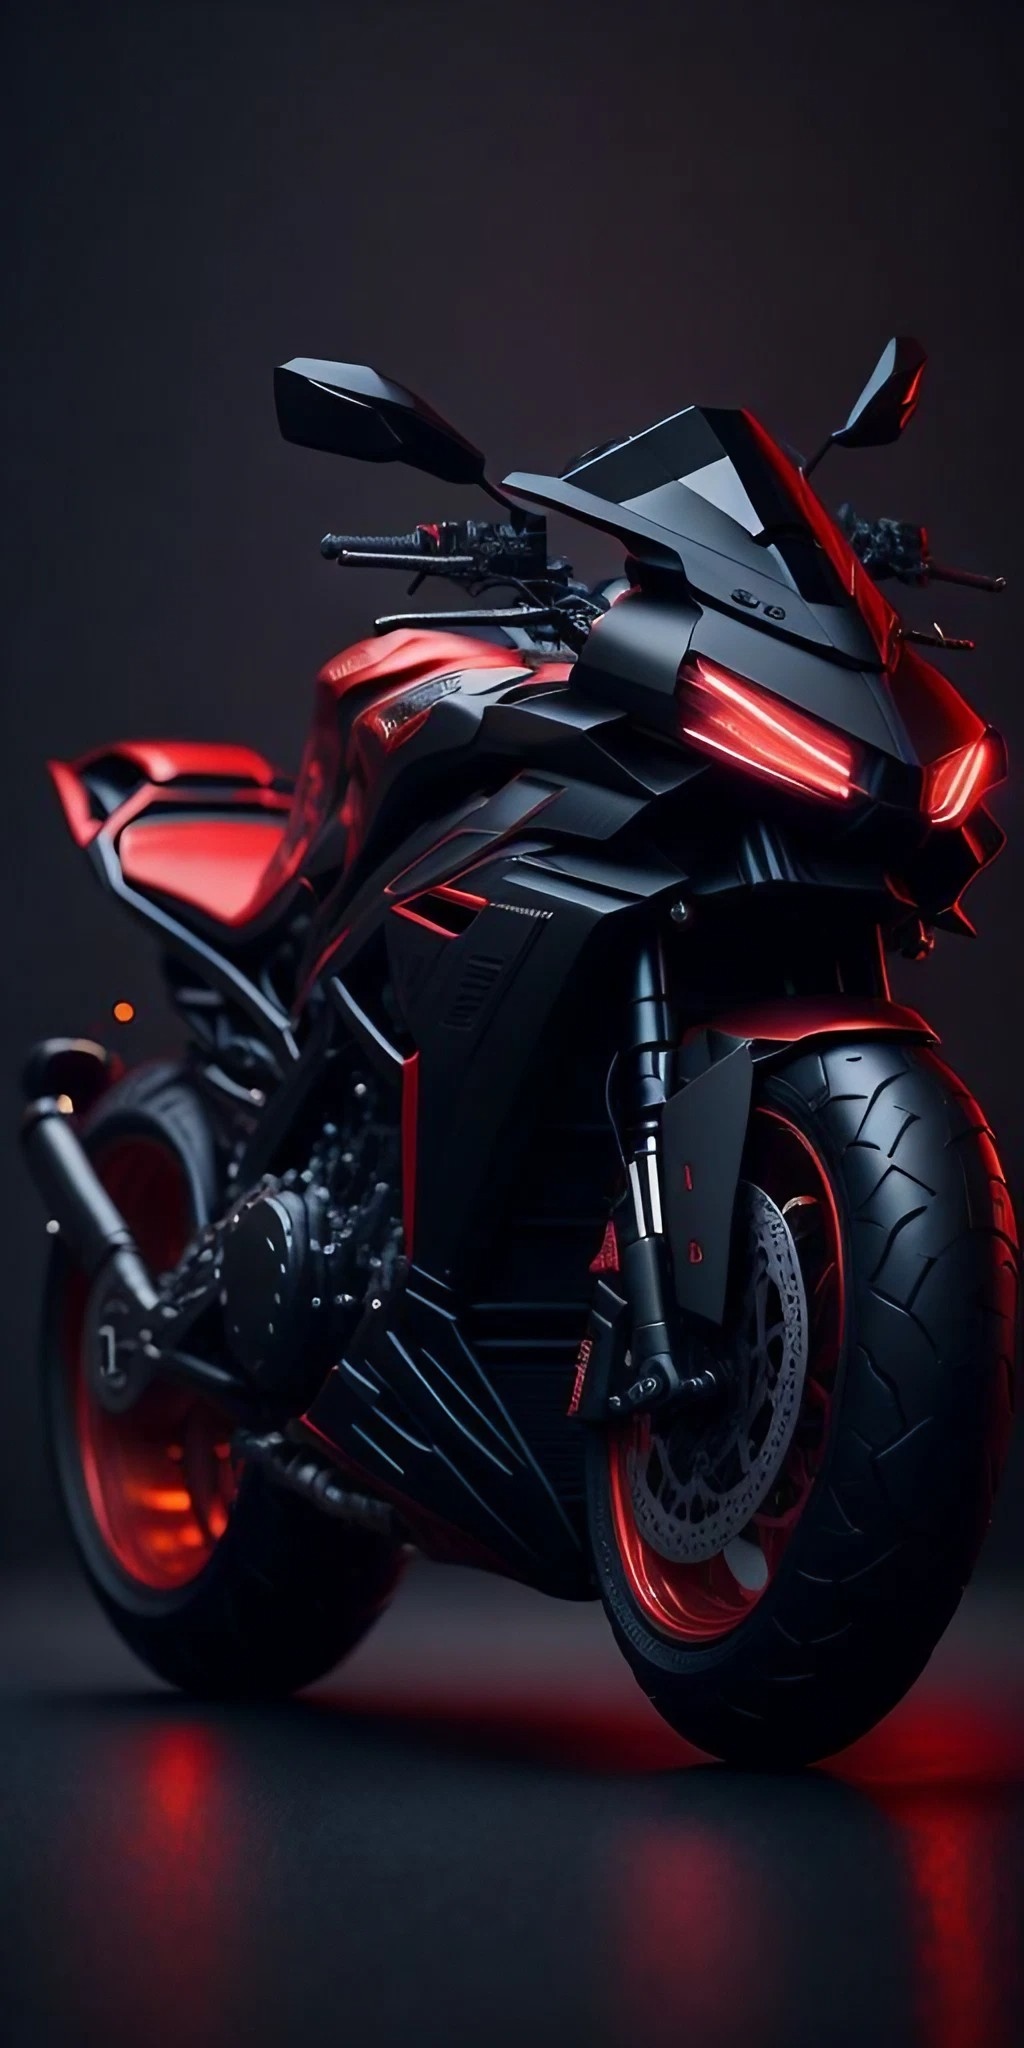 Electric Bike - Red And Black Bike